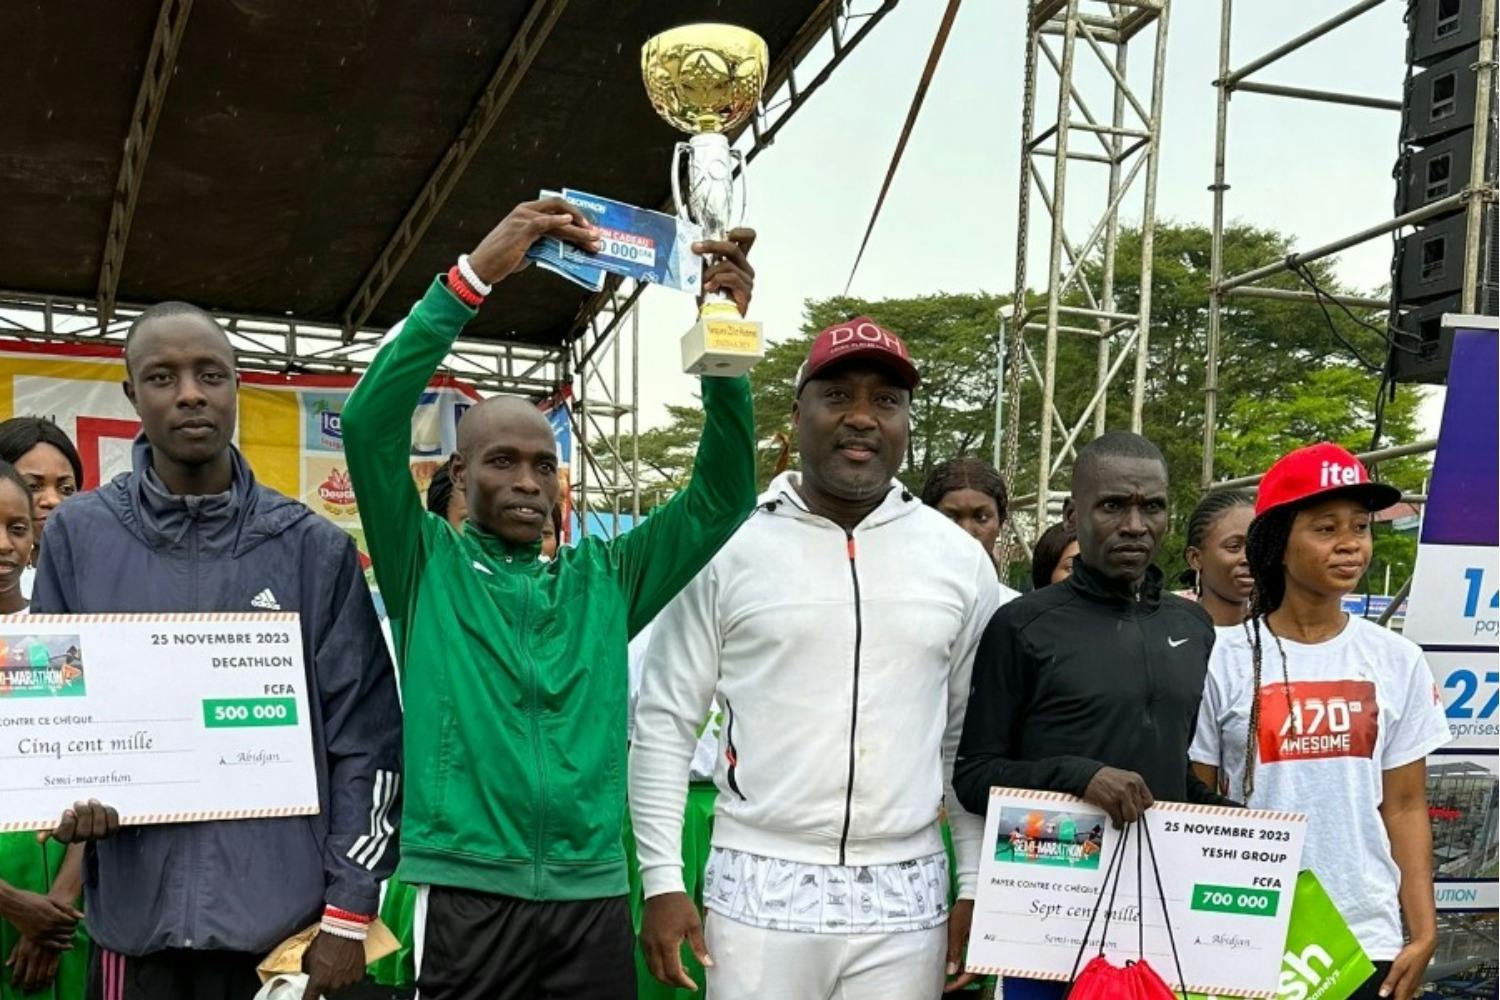 Athlétisme-Semi Marathon du District Autonomed’Abidjan : Le Kenyan Cheboi William Rutto vainqueur remporte le trophée et empoche 1.500.000 FCFA